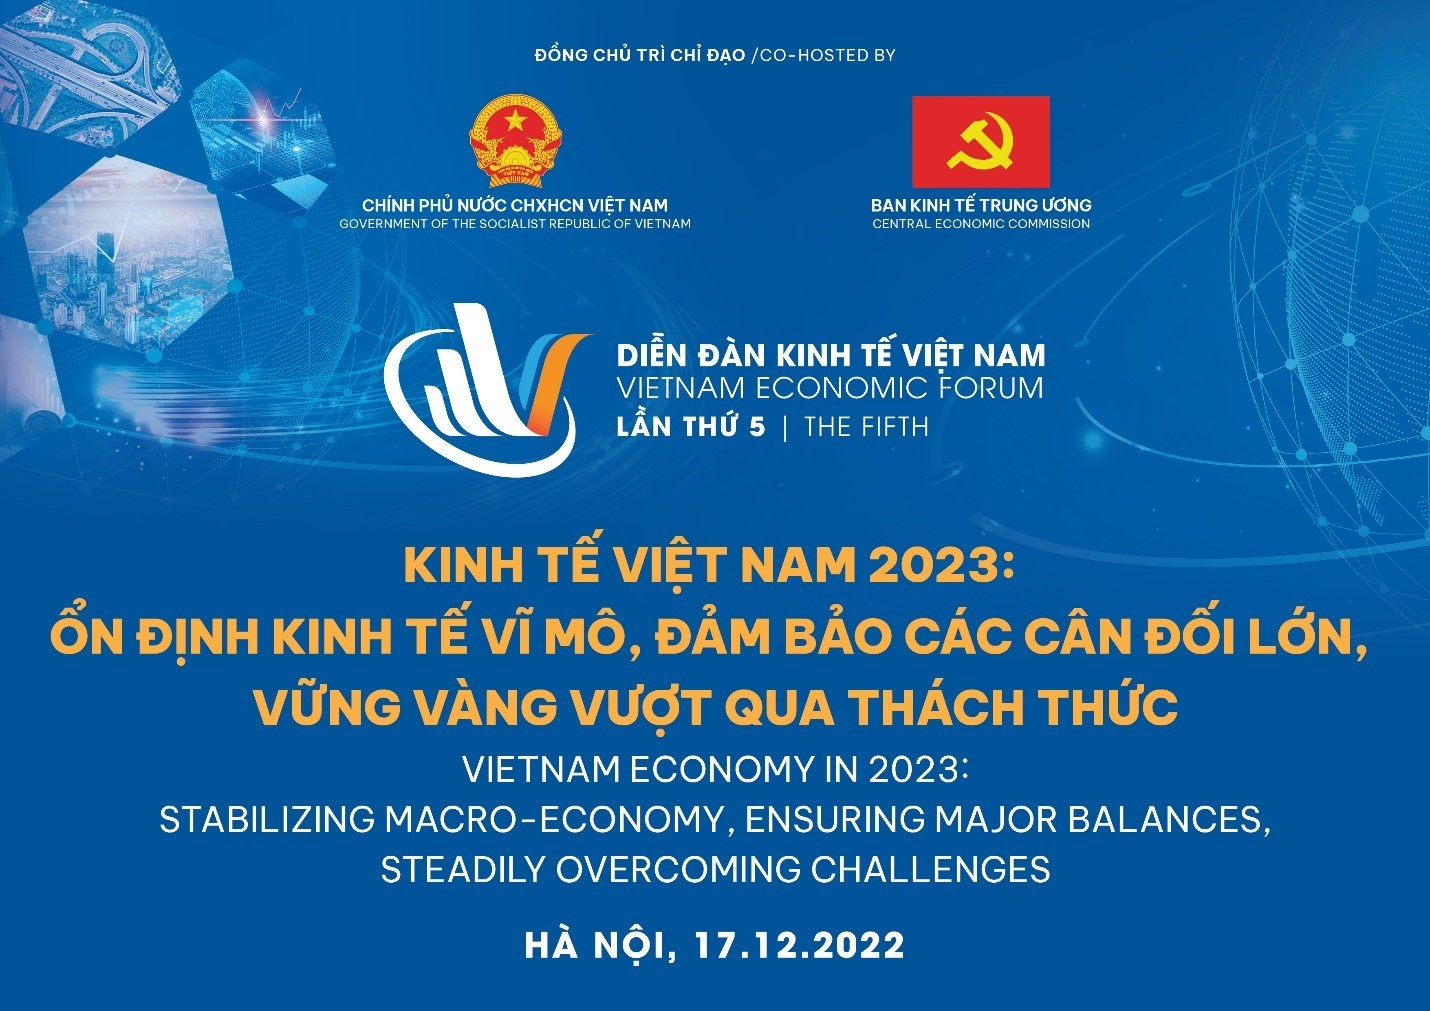 Giám đốc Vietthink tham dự Diễn đàn kinh tế Việt Nam lần thứ 5 (2023)